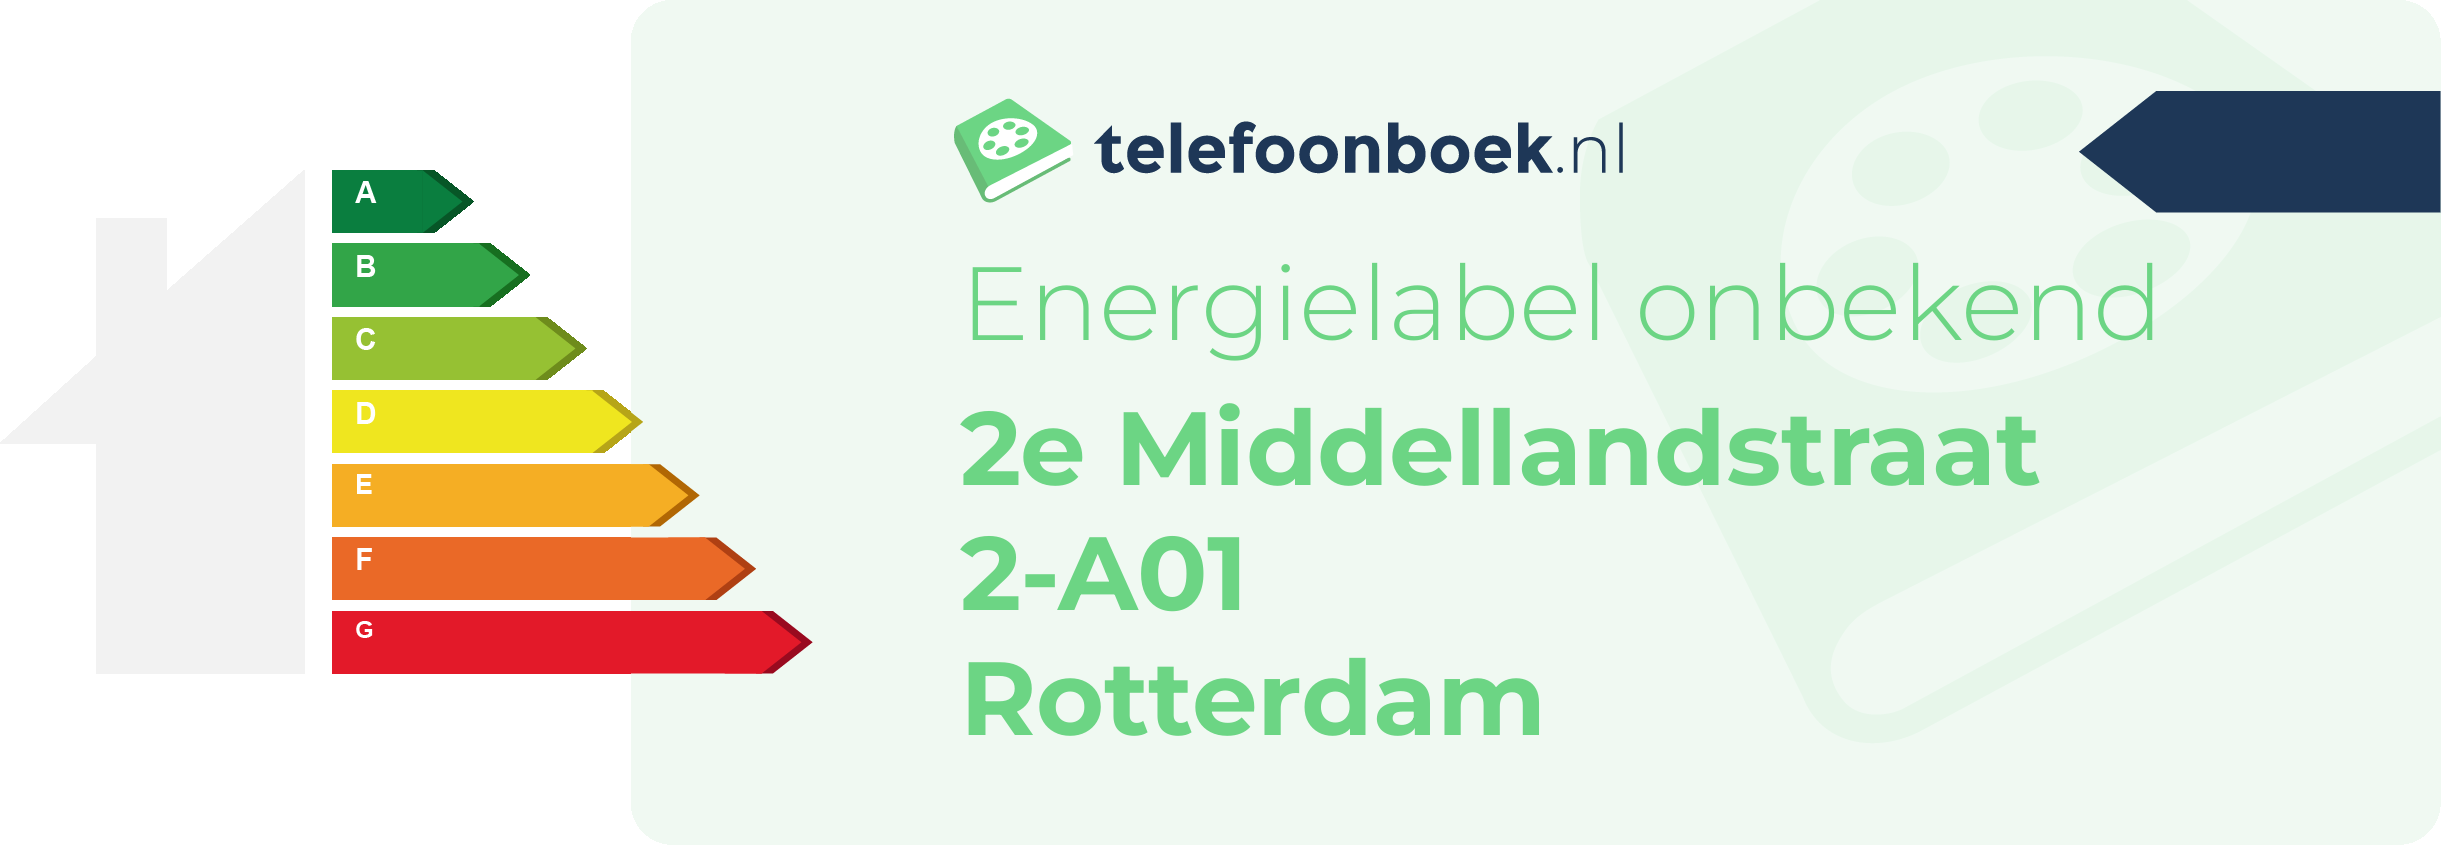 Energielabel 2e Middellandstraat 2-A01 Rotterdam